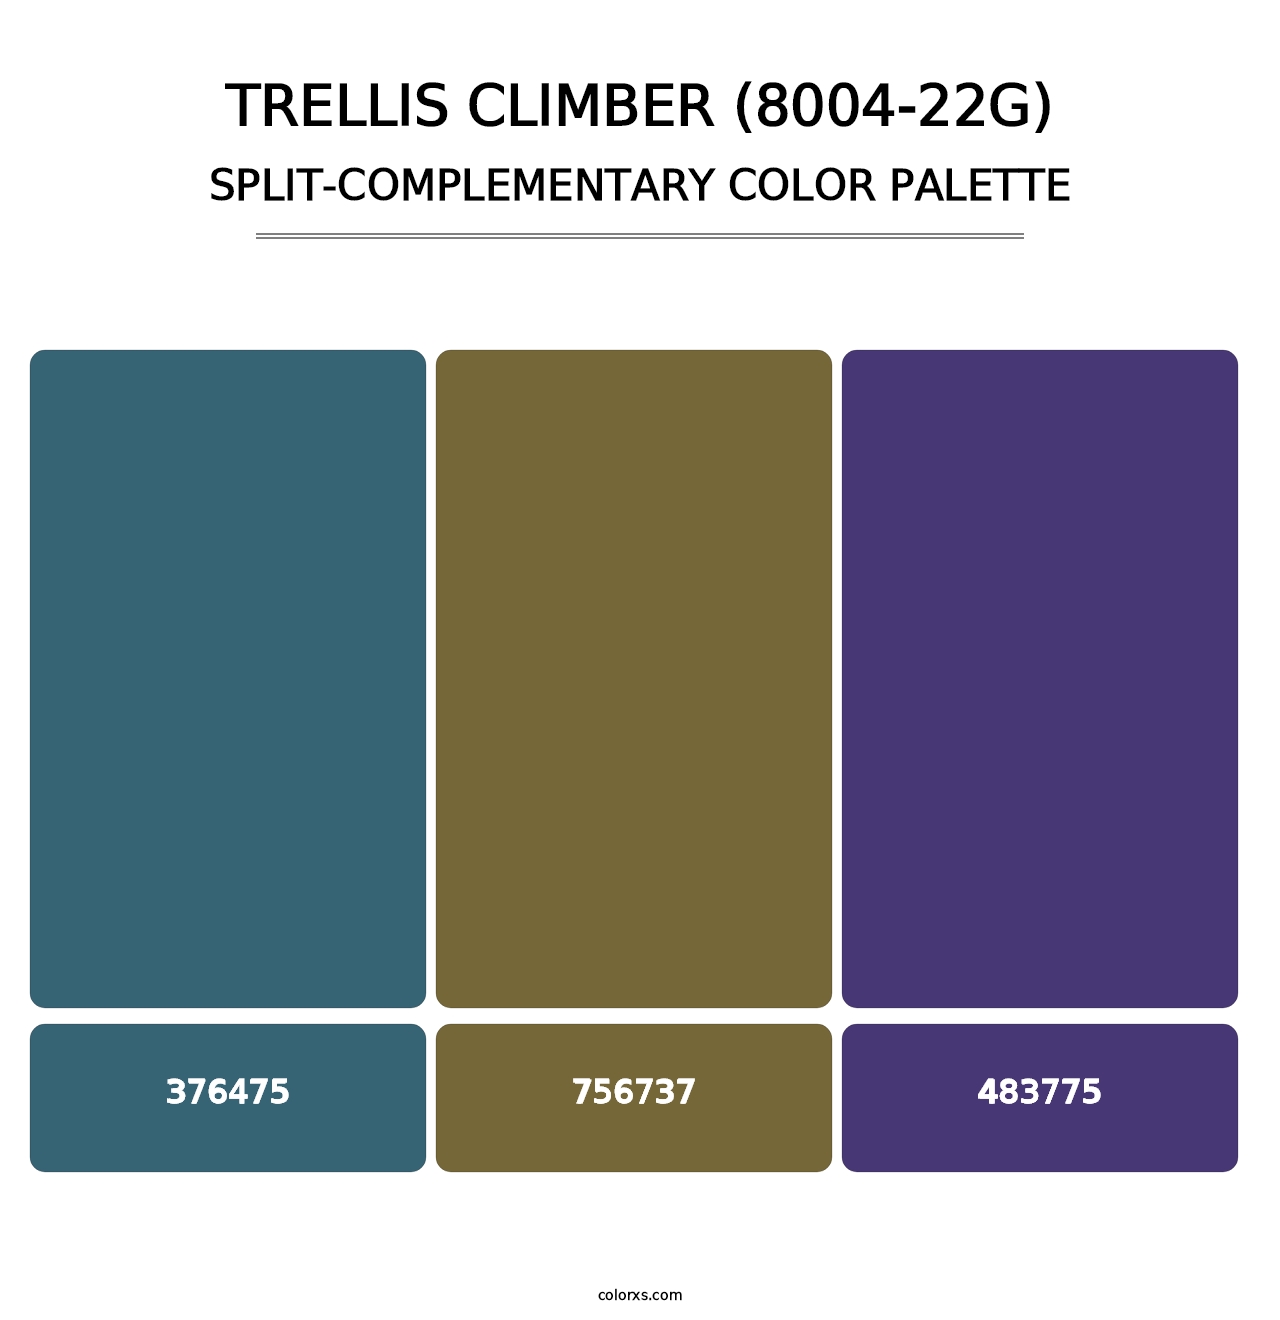 Trellis Climber (8004-22G) - Split-Complementary Color Palette